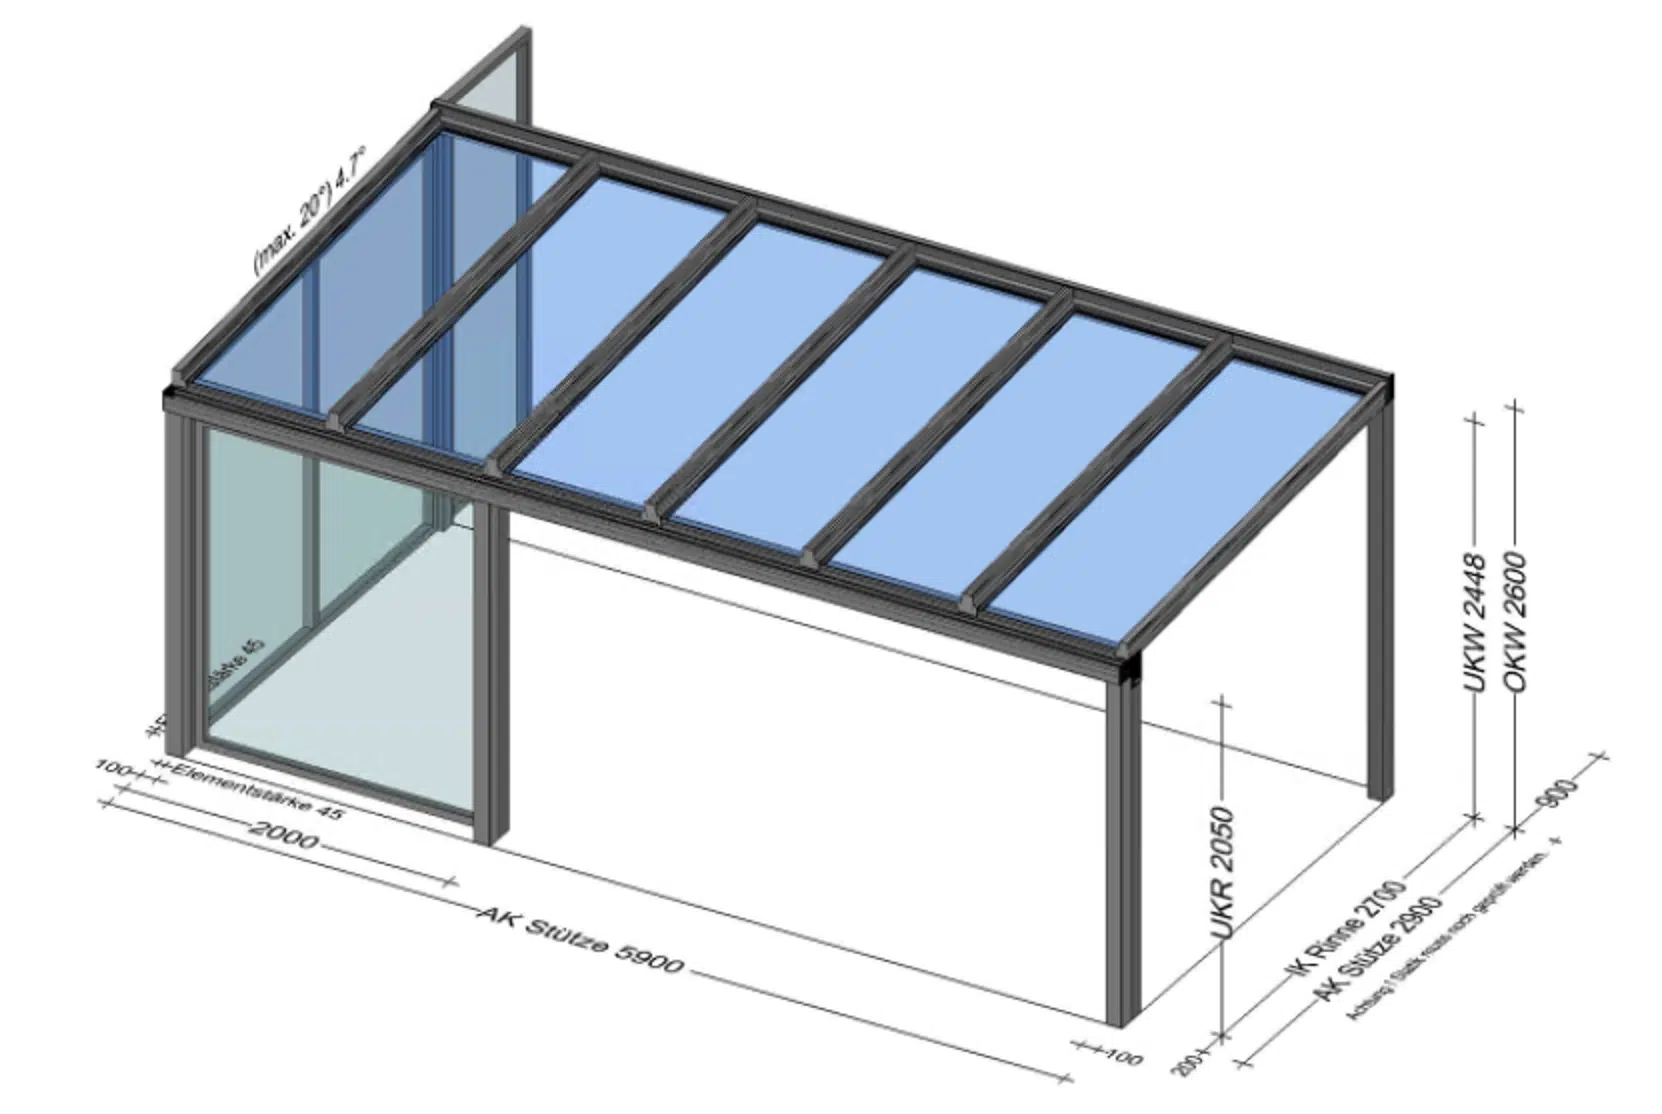 Terrassenüberdachung 6 x 3 Meter mit Teilverglasung seitlich - Preis